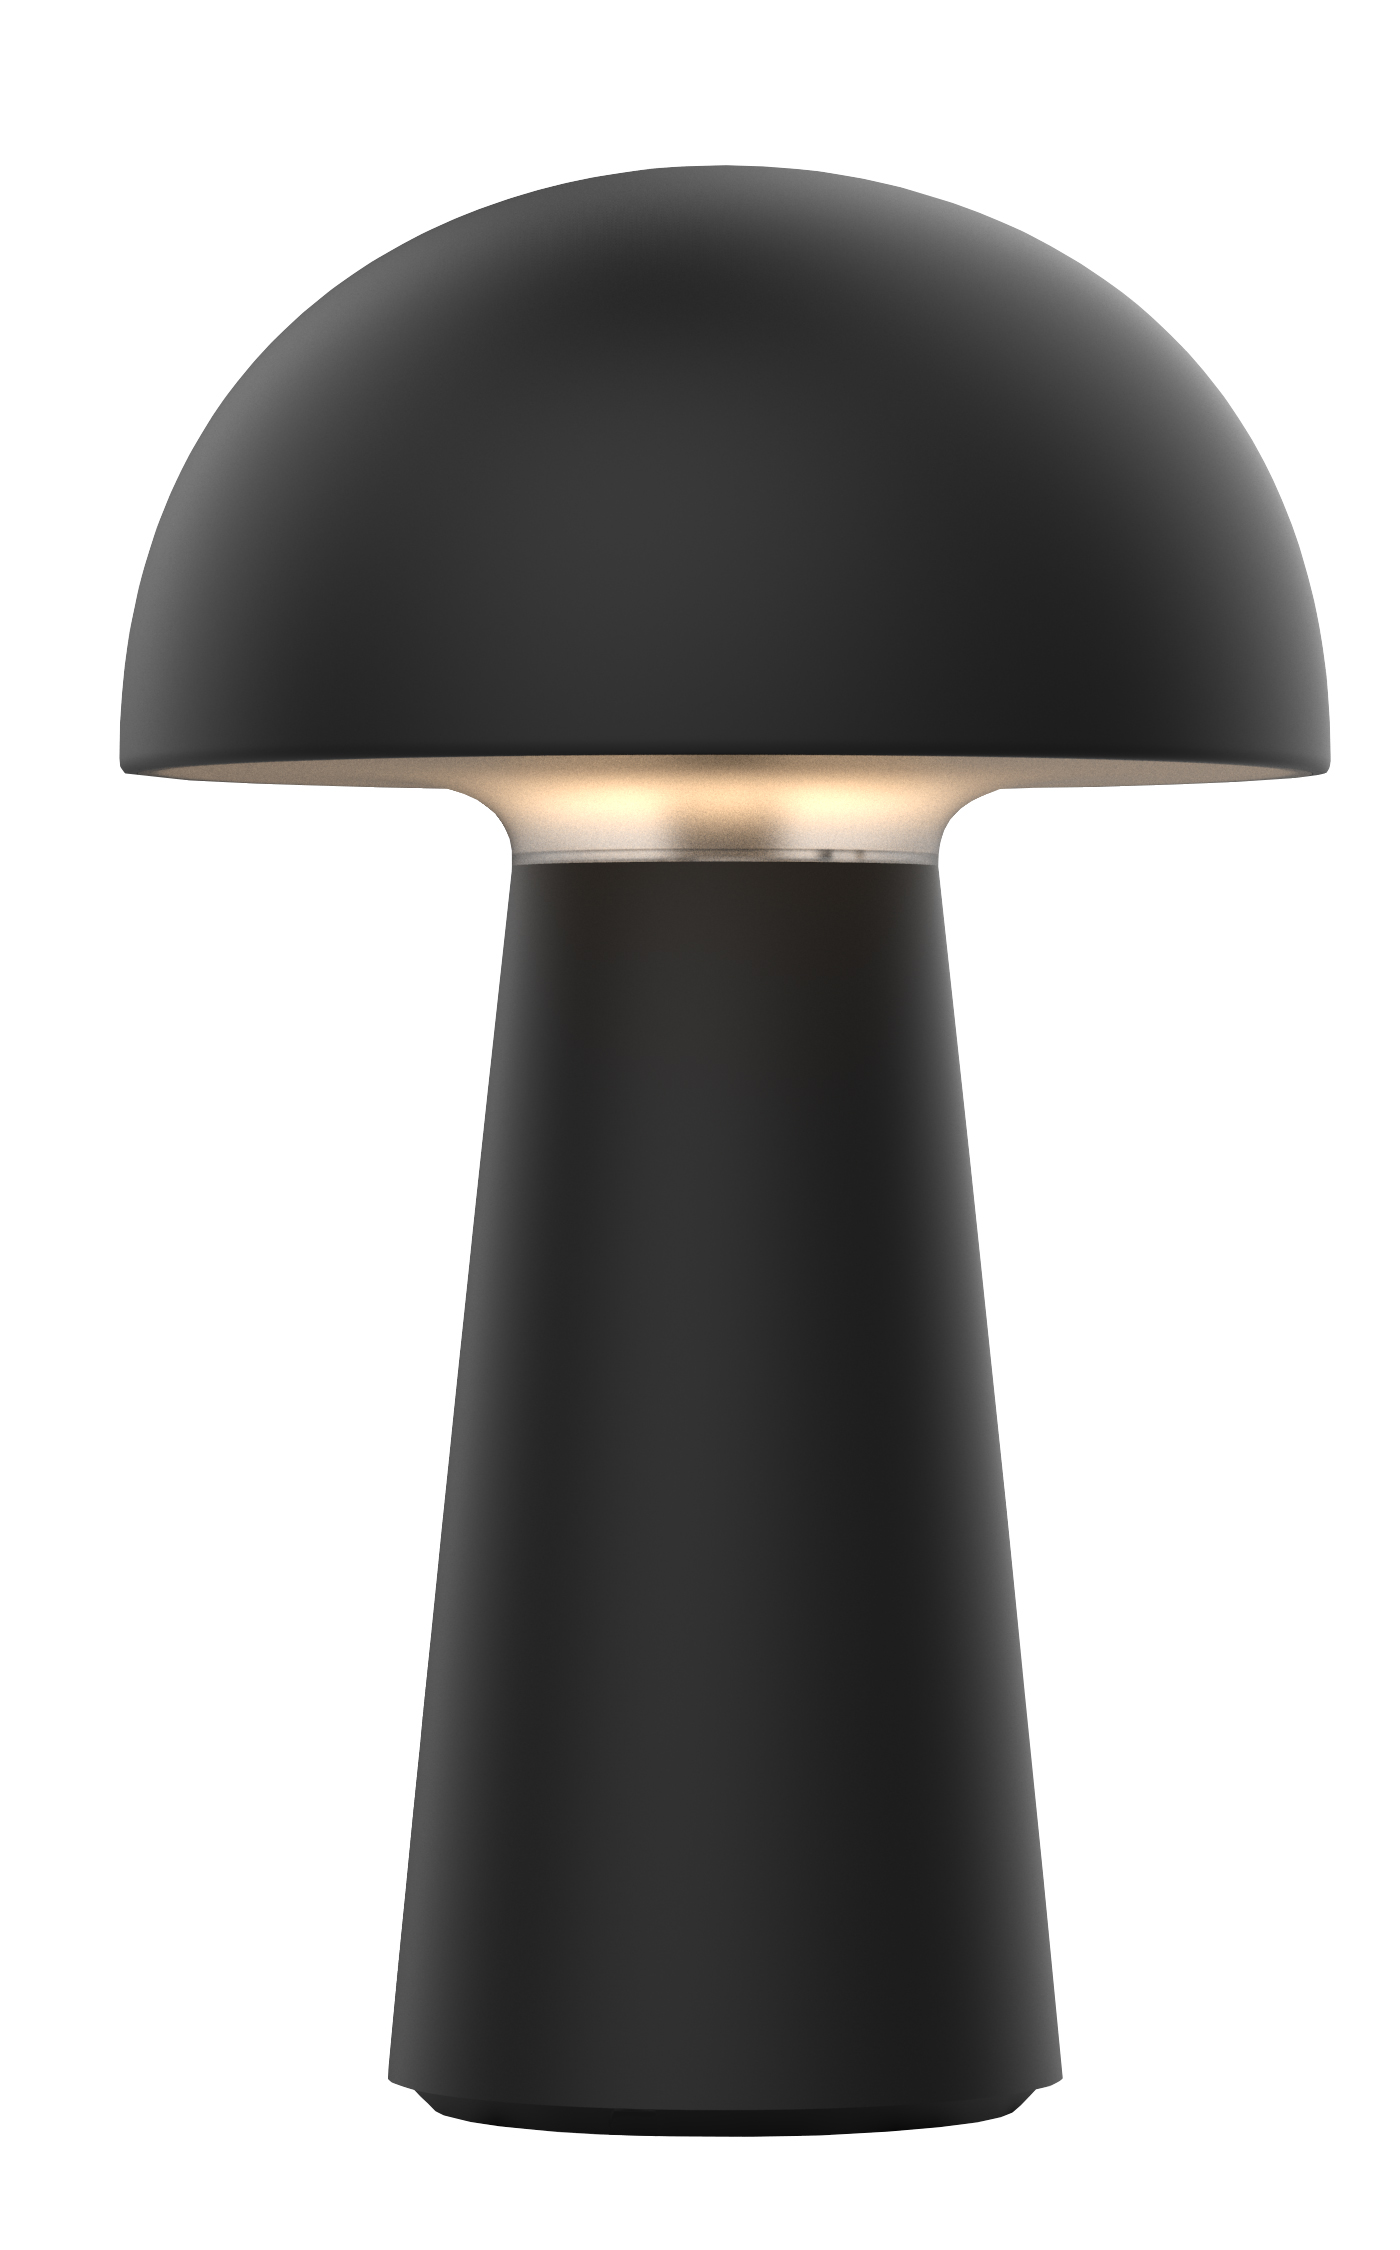 Lampe TL LED rechargeable mart noir 4.7W 170LM IP44